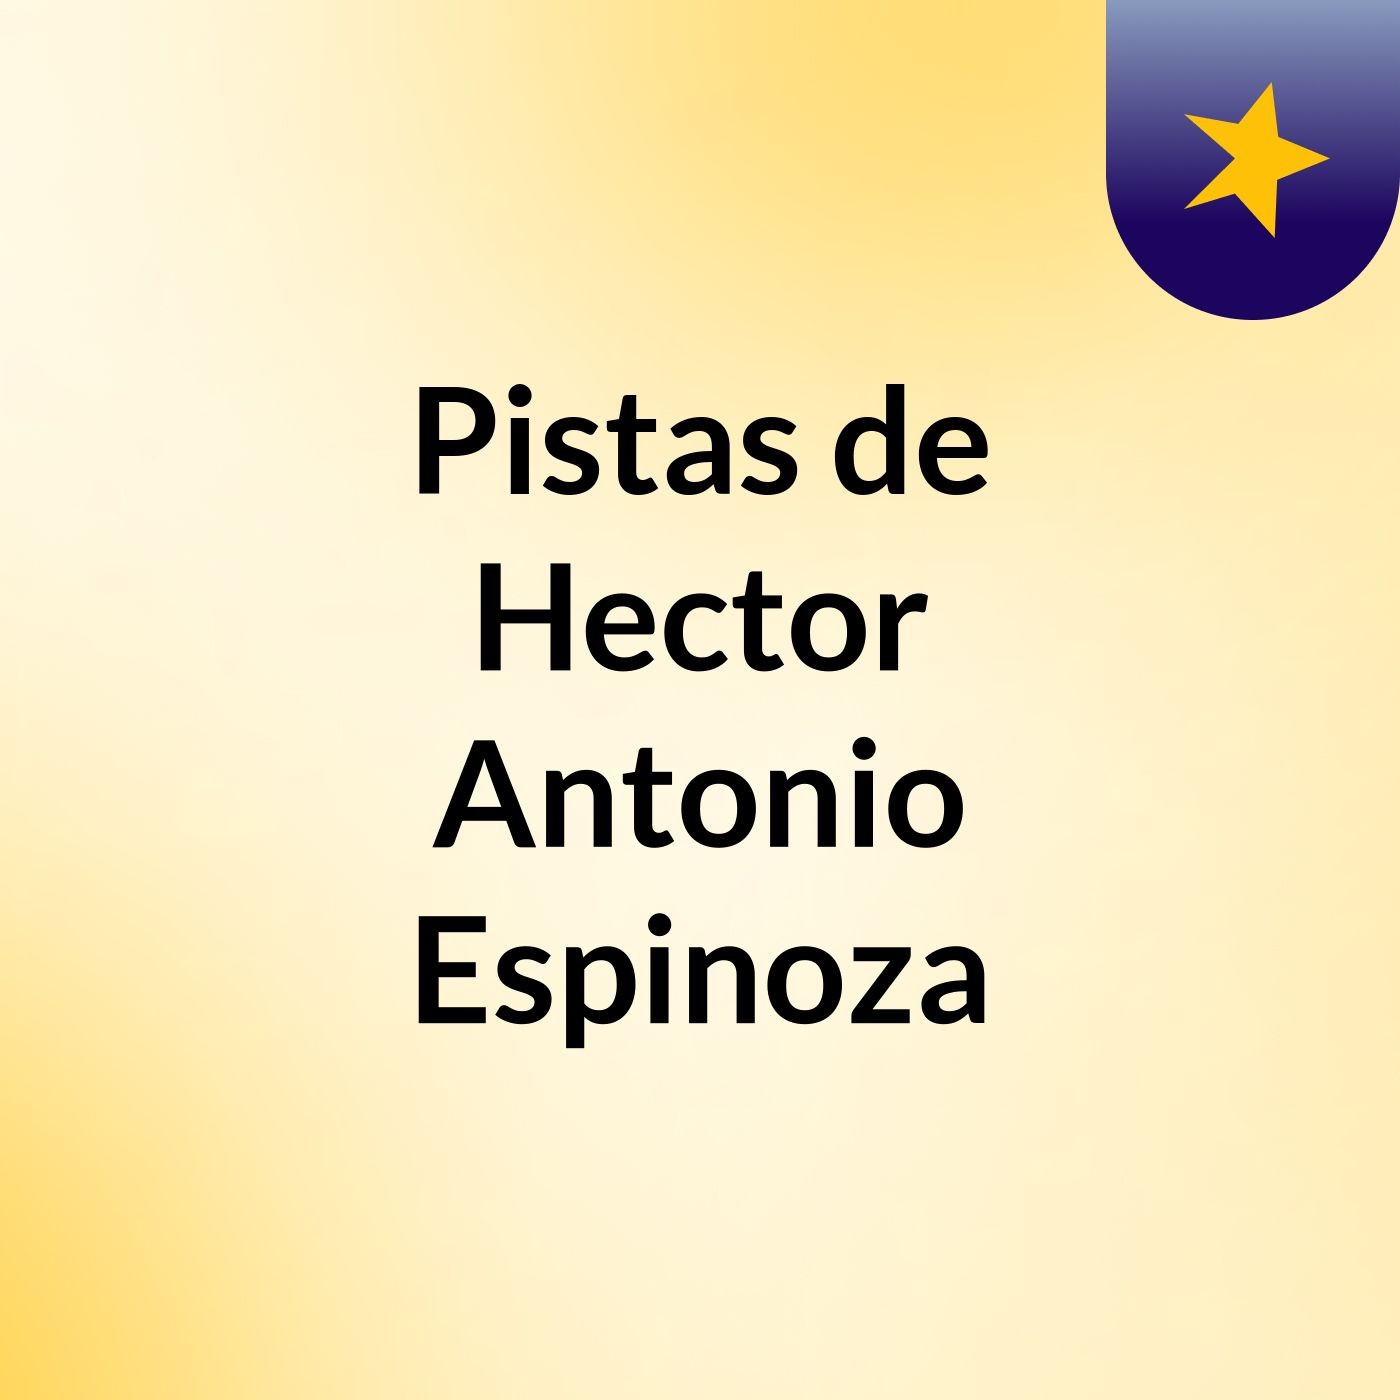 Pistas de Hector Antonio Espinoza